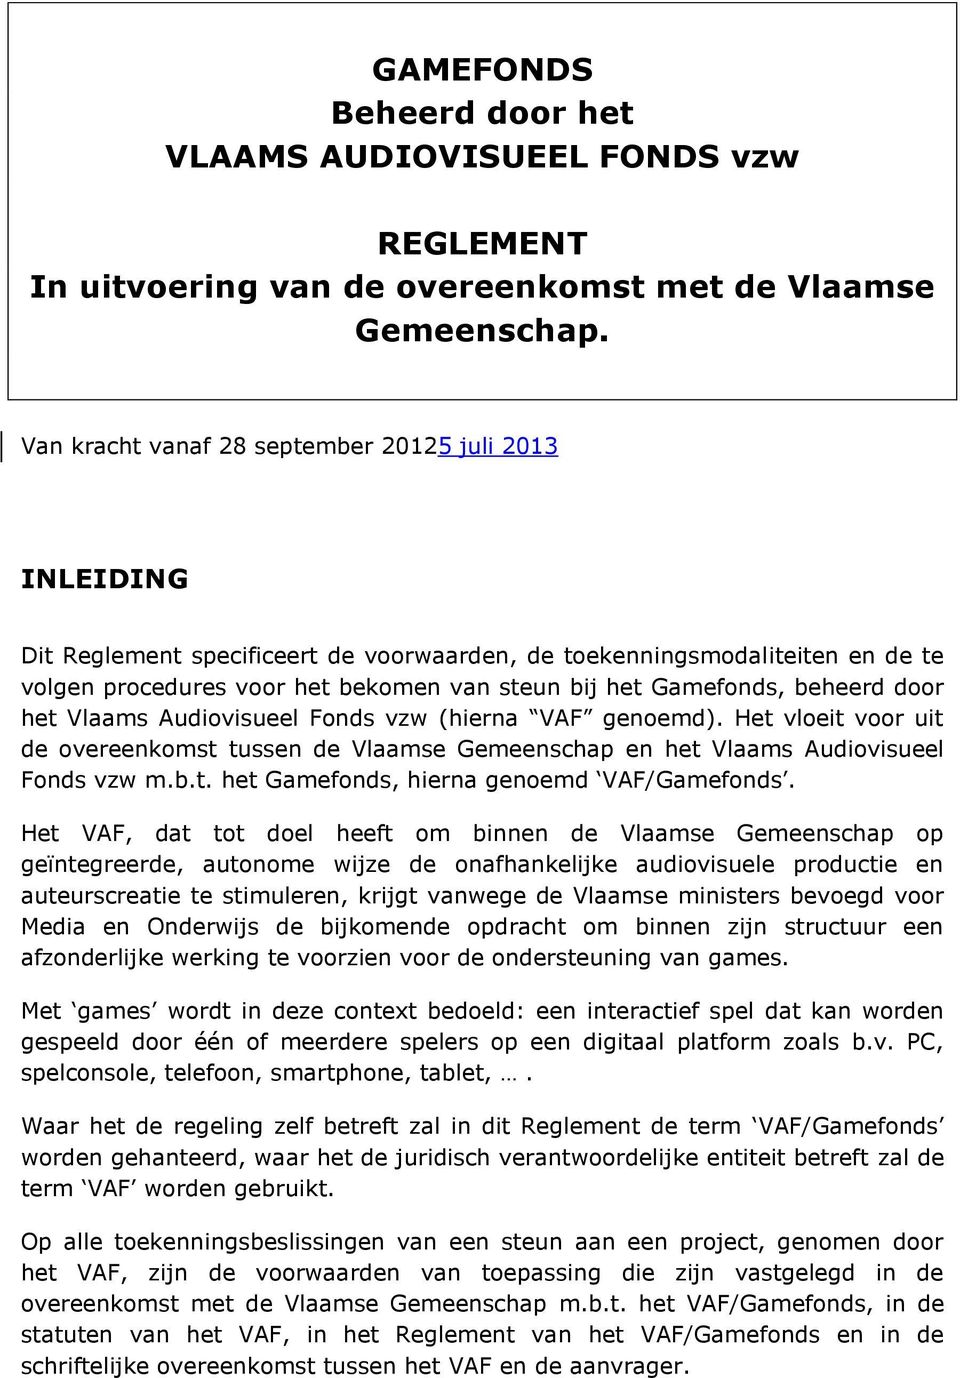 beheerd door het Vlaams Audiovisueel Fonds vzw (hierna VAF genoemd). Het vloeit voor uit de overeenkomst tussen de Vlaamse Gemeenschap en het Vlaams Audiovisueel Fonds vzw m.b.t. het Gamefonds, hierna genoemd VAF/Gamefonds.